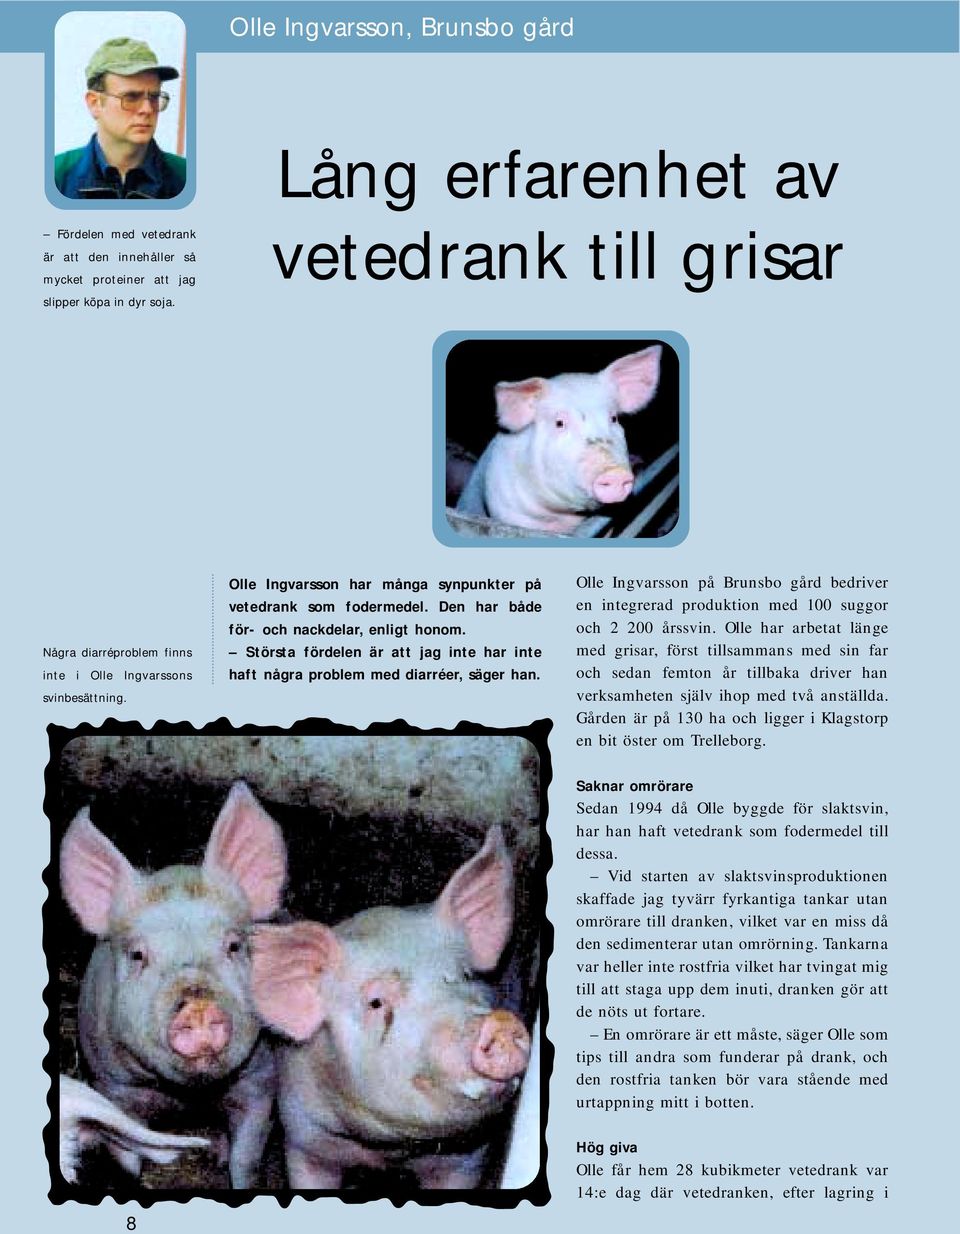 Största fördelen är att jag inte har inte haft några problem med diarréer, säger han. Olle Ingvarsson på Brunsbo gård bedriver en integrerad produktion med 100 suggor och 2 200 årssvin.